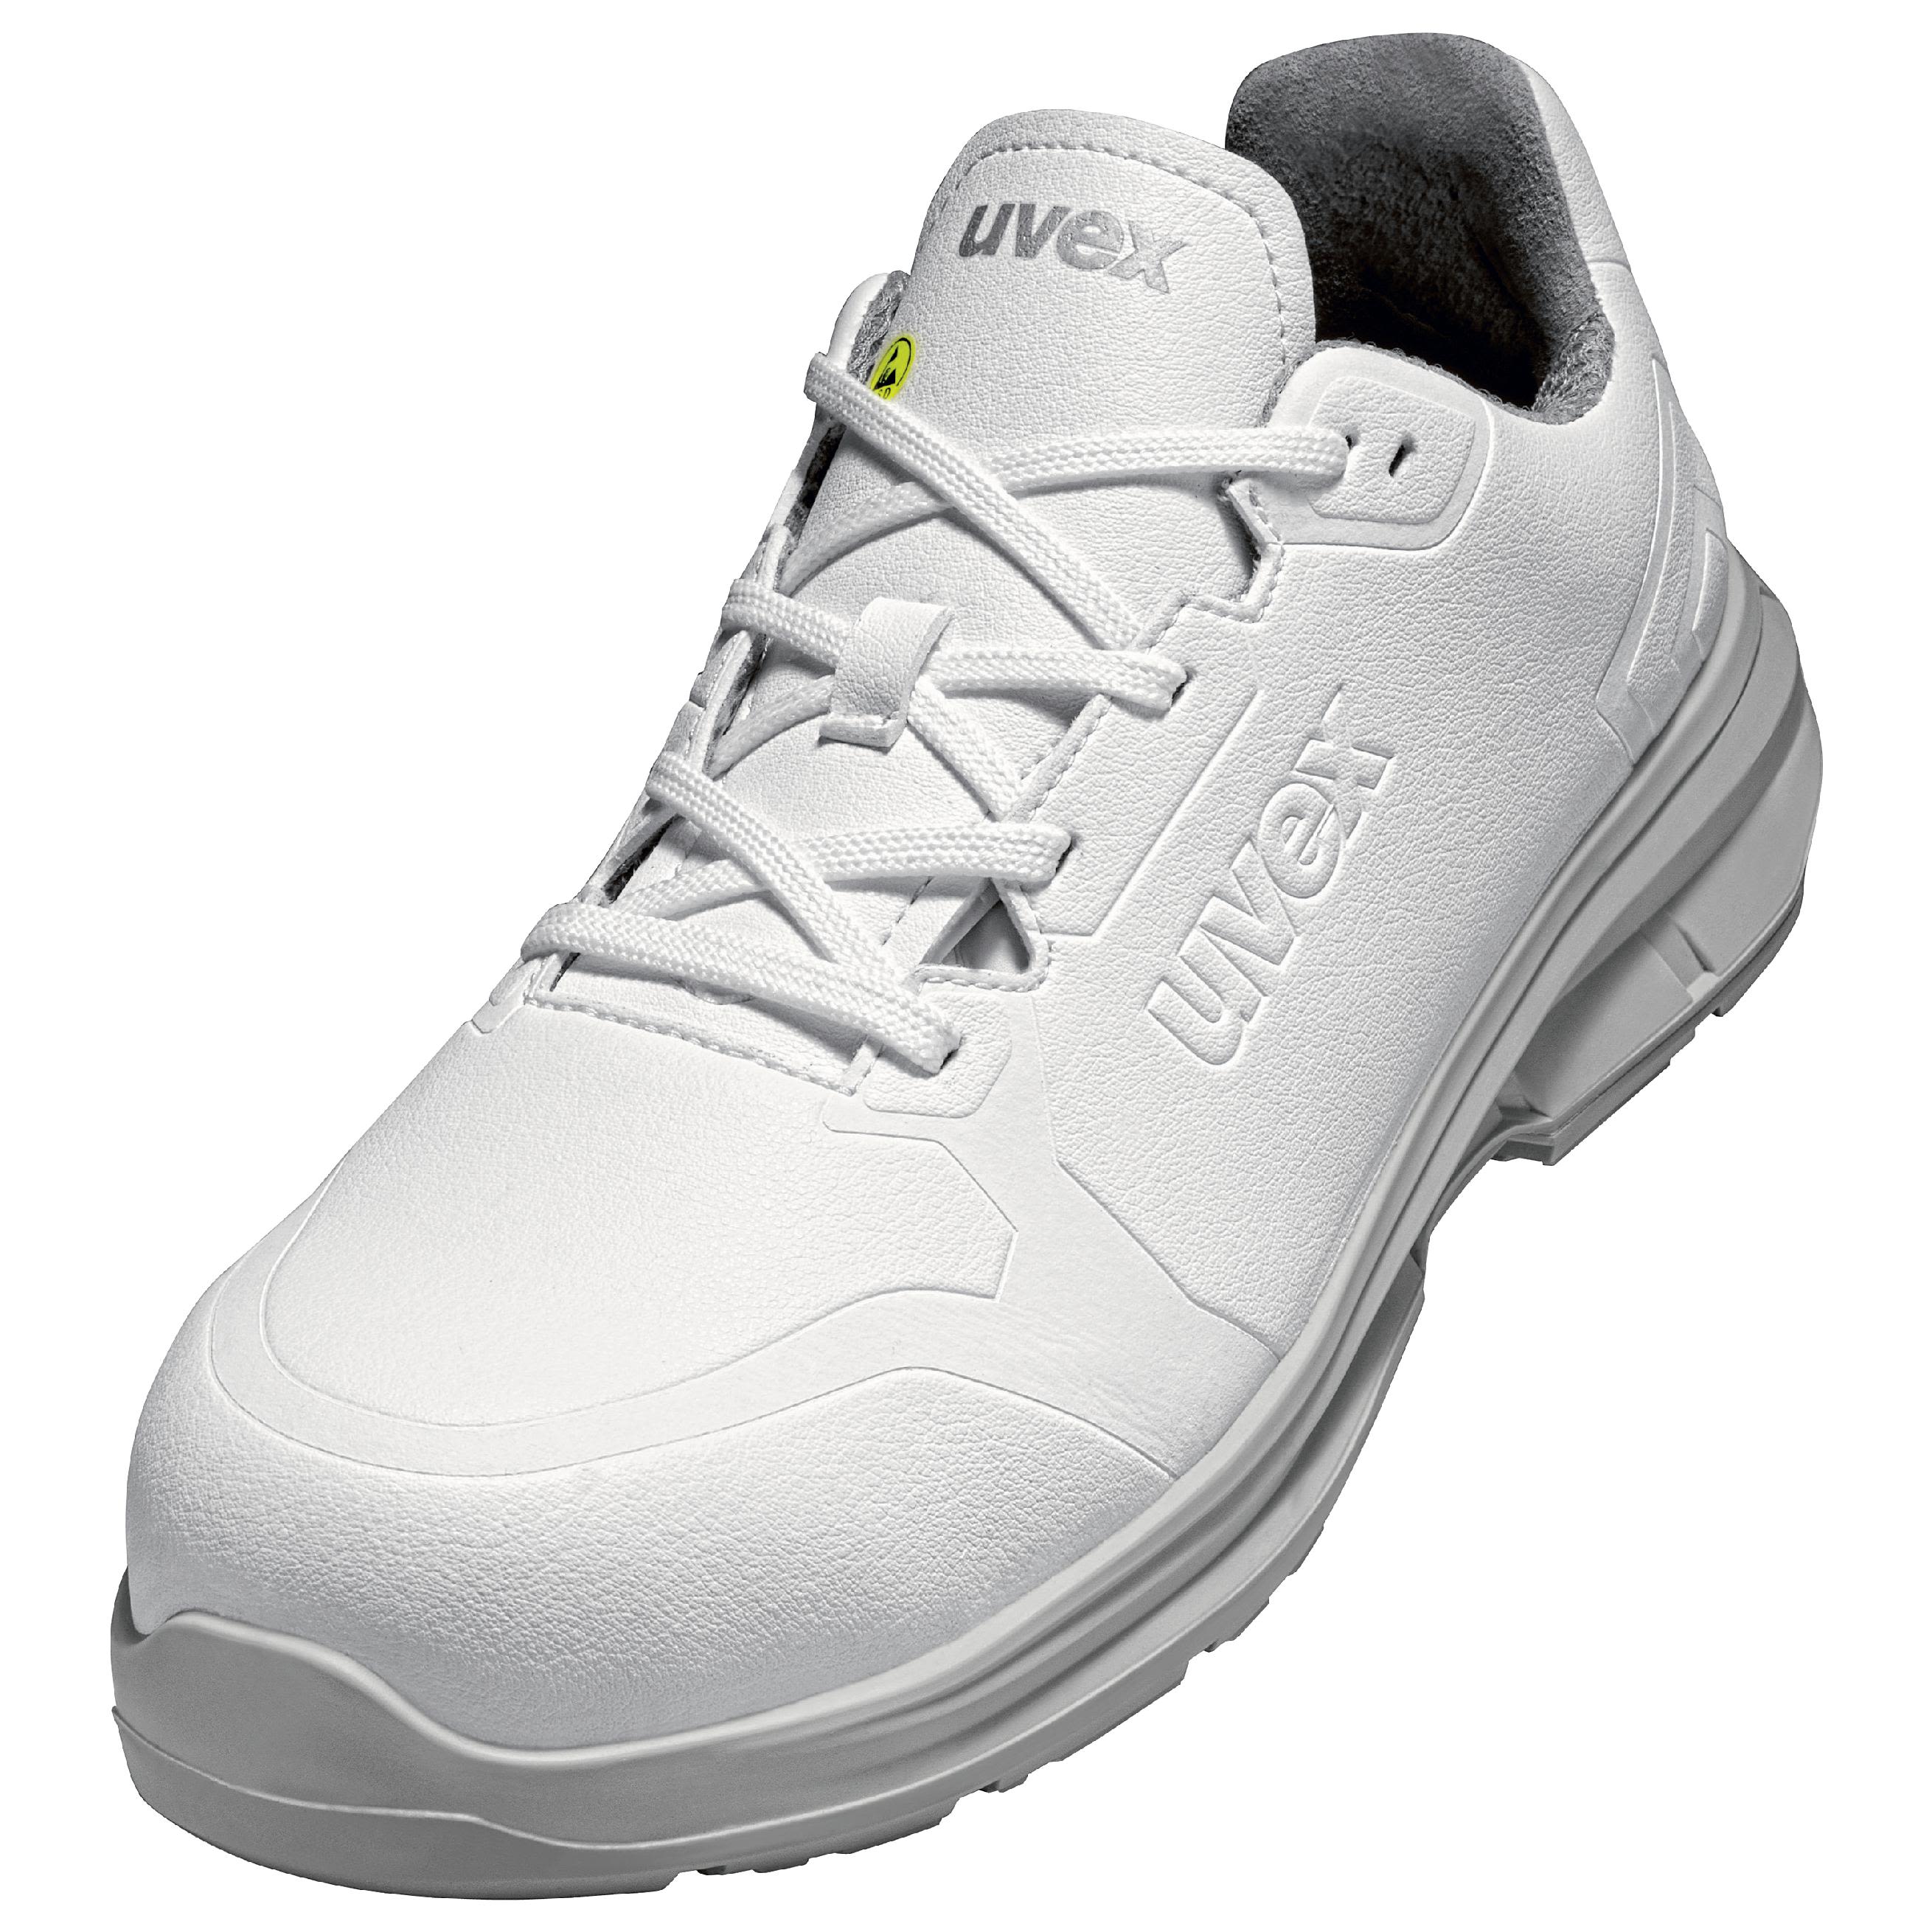 6582244 Uvex Uvex White Unisex White Toe Capped Safety Shoes Eu 44 Uk 10 Rs